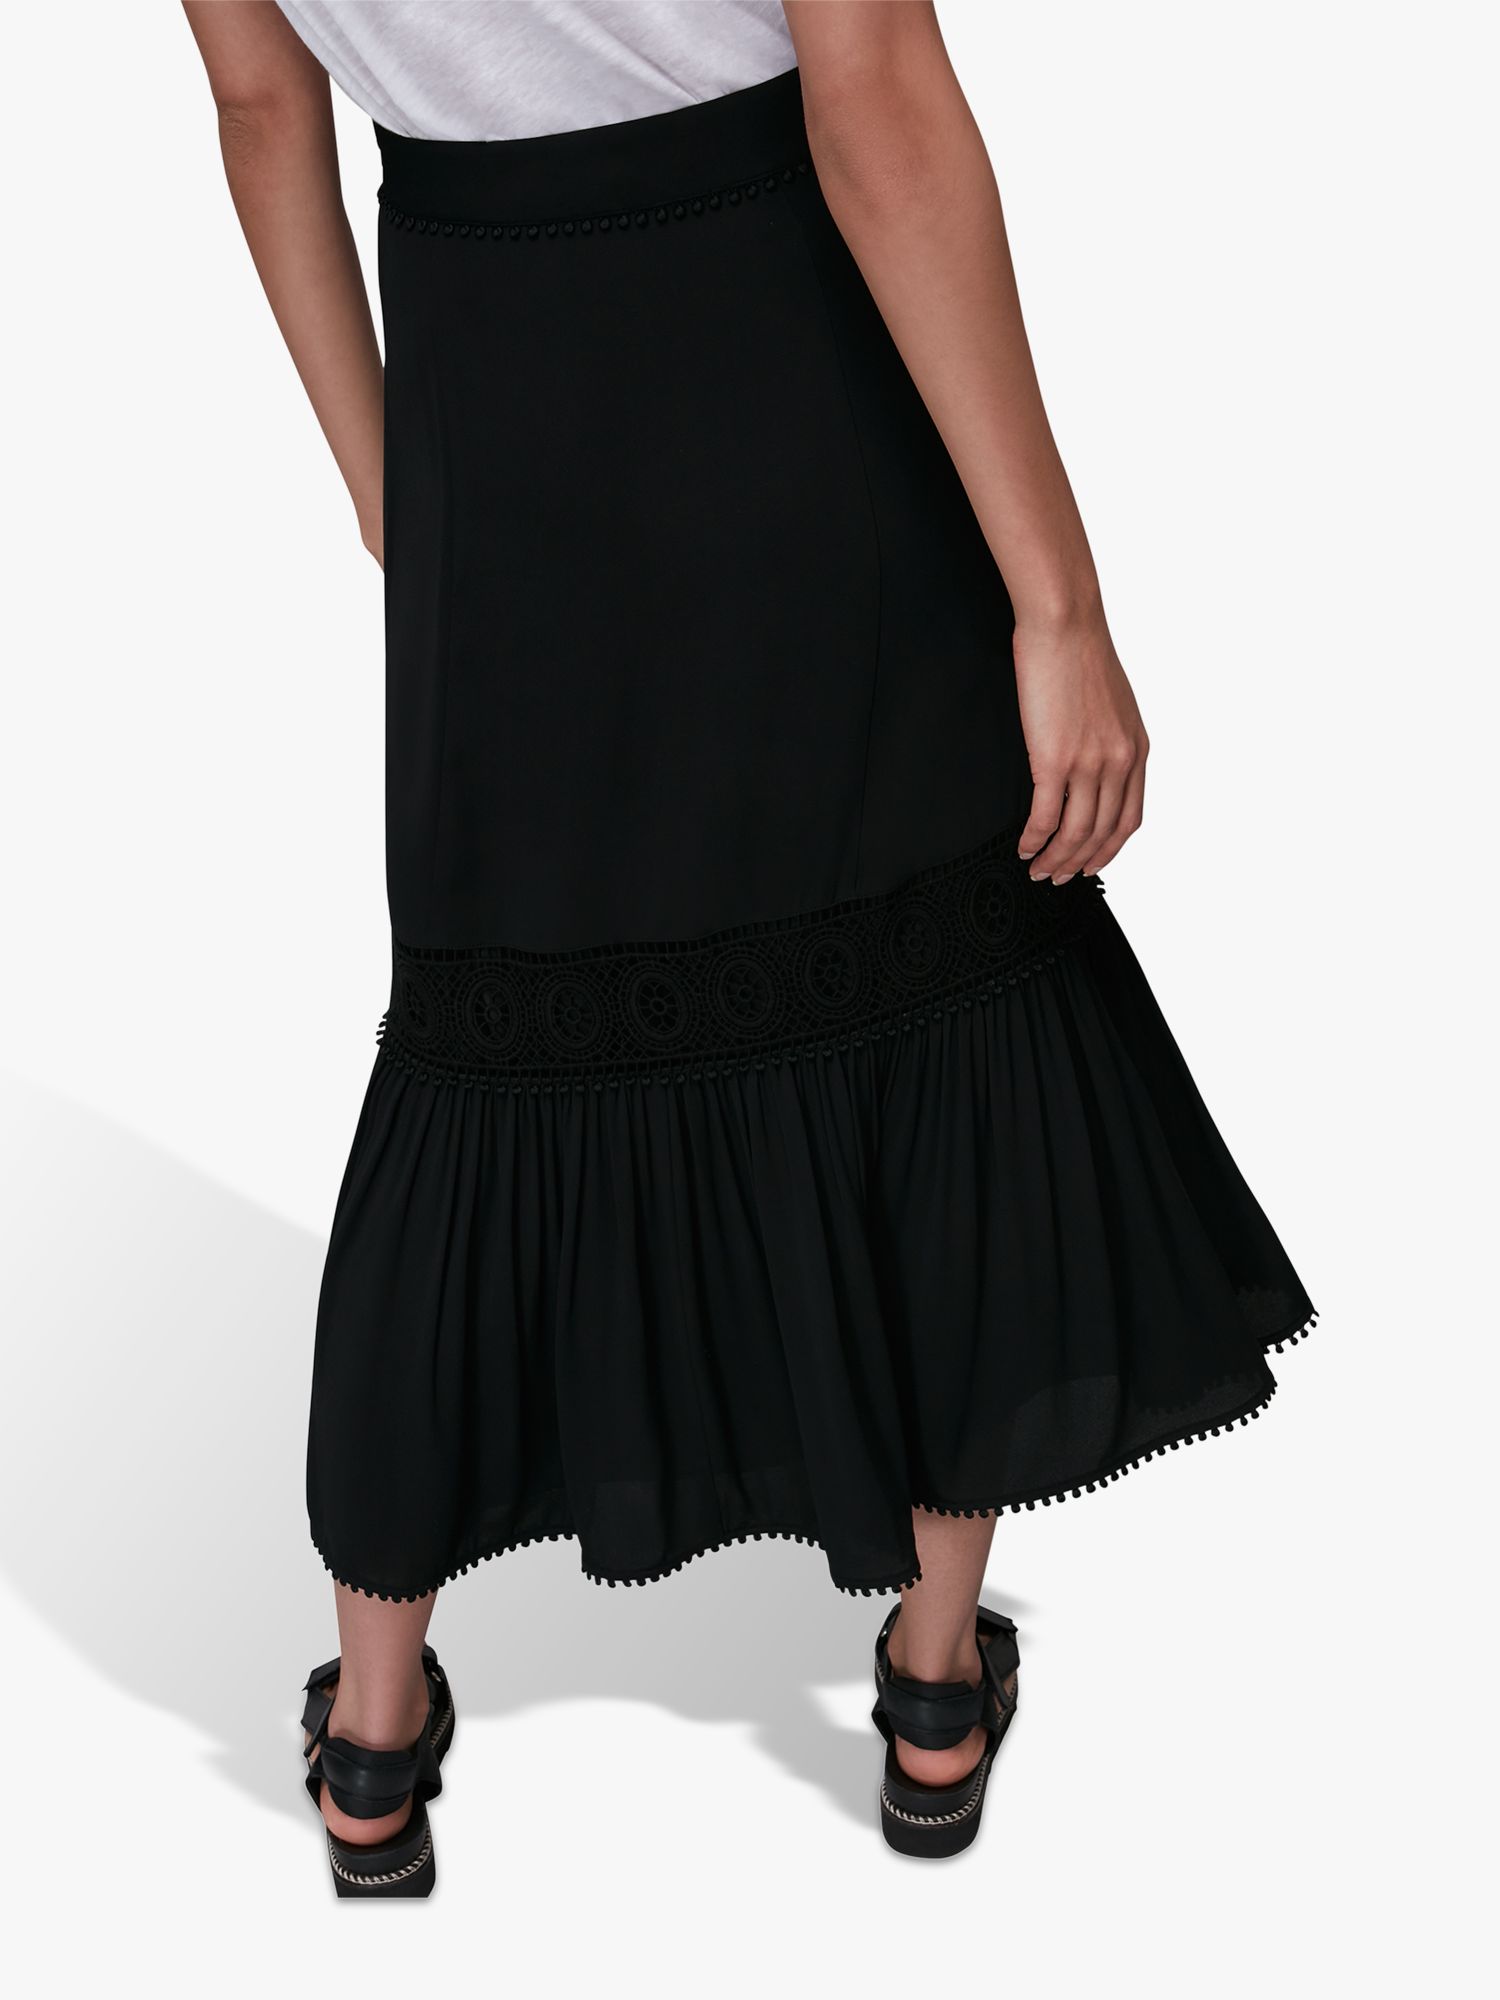 Whistles Ada Crochet Detail Midi Skirt, Black at John Lewis & Partners